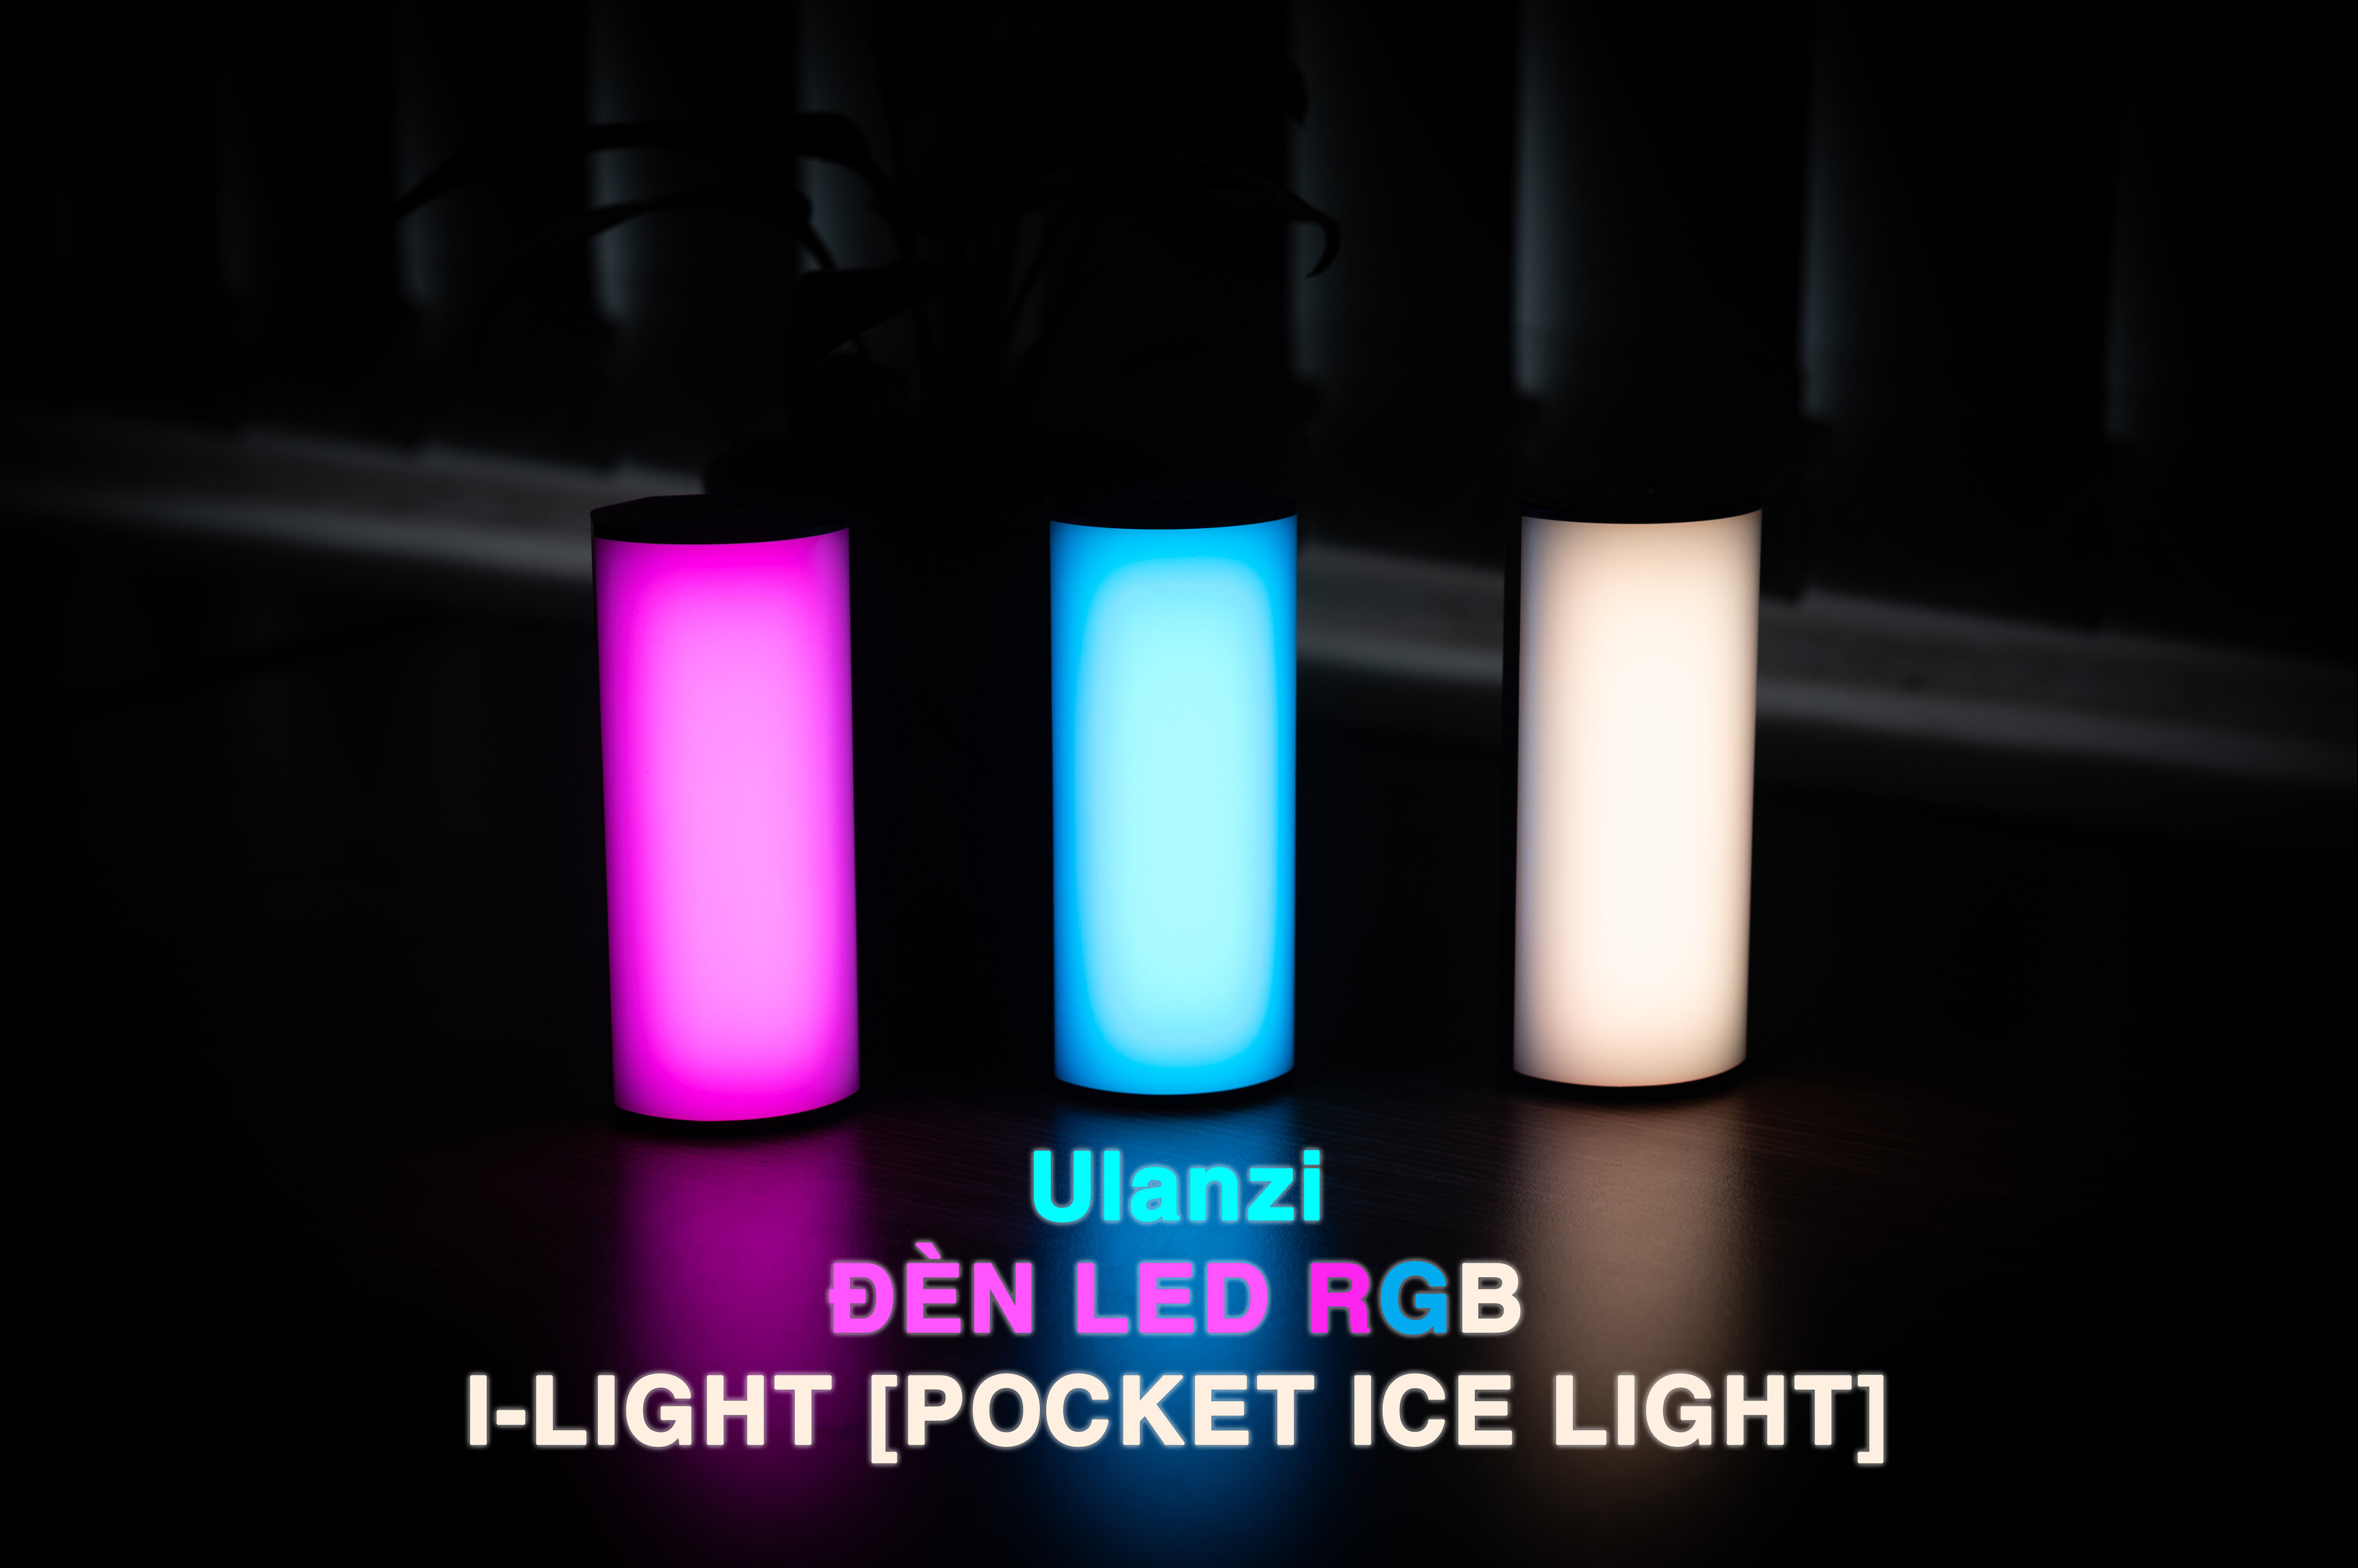 Trải nghiệm đèn RGB Ulanzi I-LIGHT: Ngon-Bổ-Rẻ-Ánh sáng tốt cho Vloger chỉ 425.000VNĐ